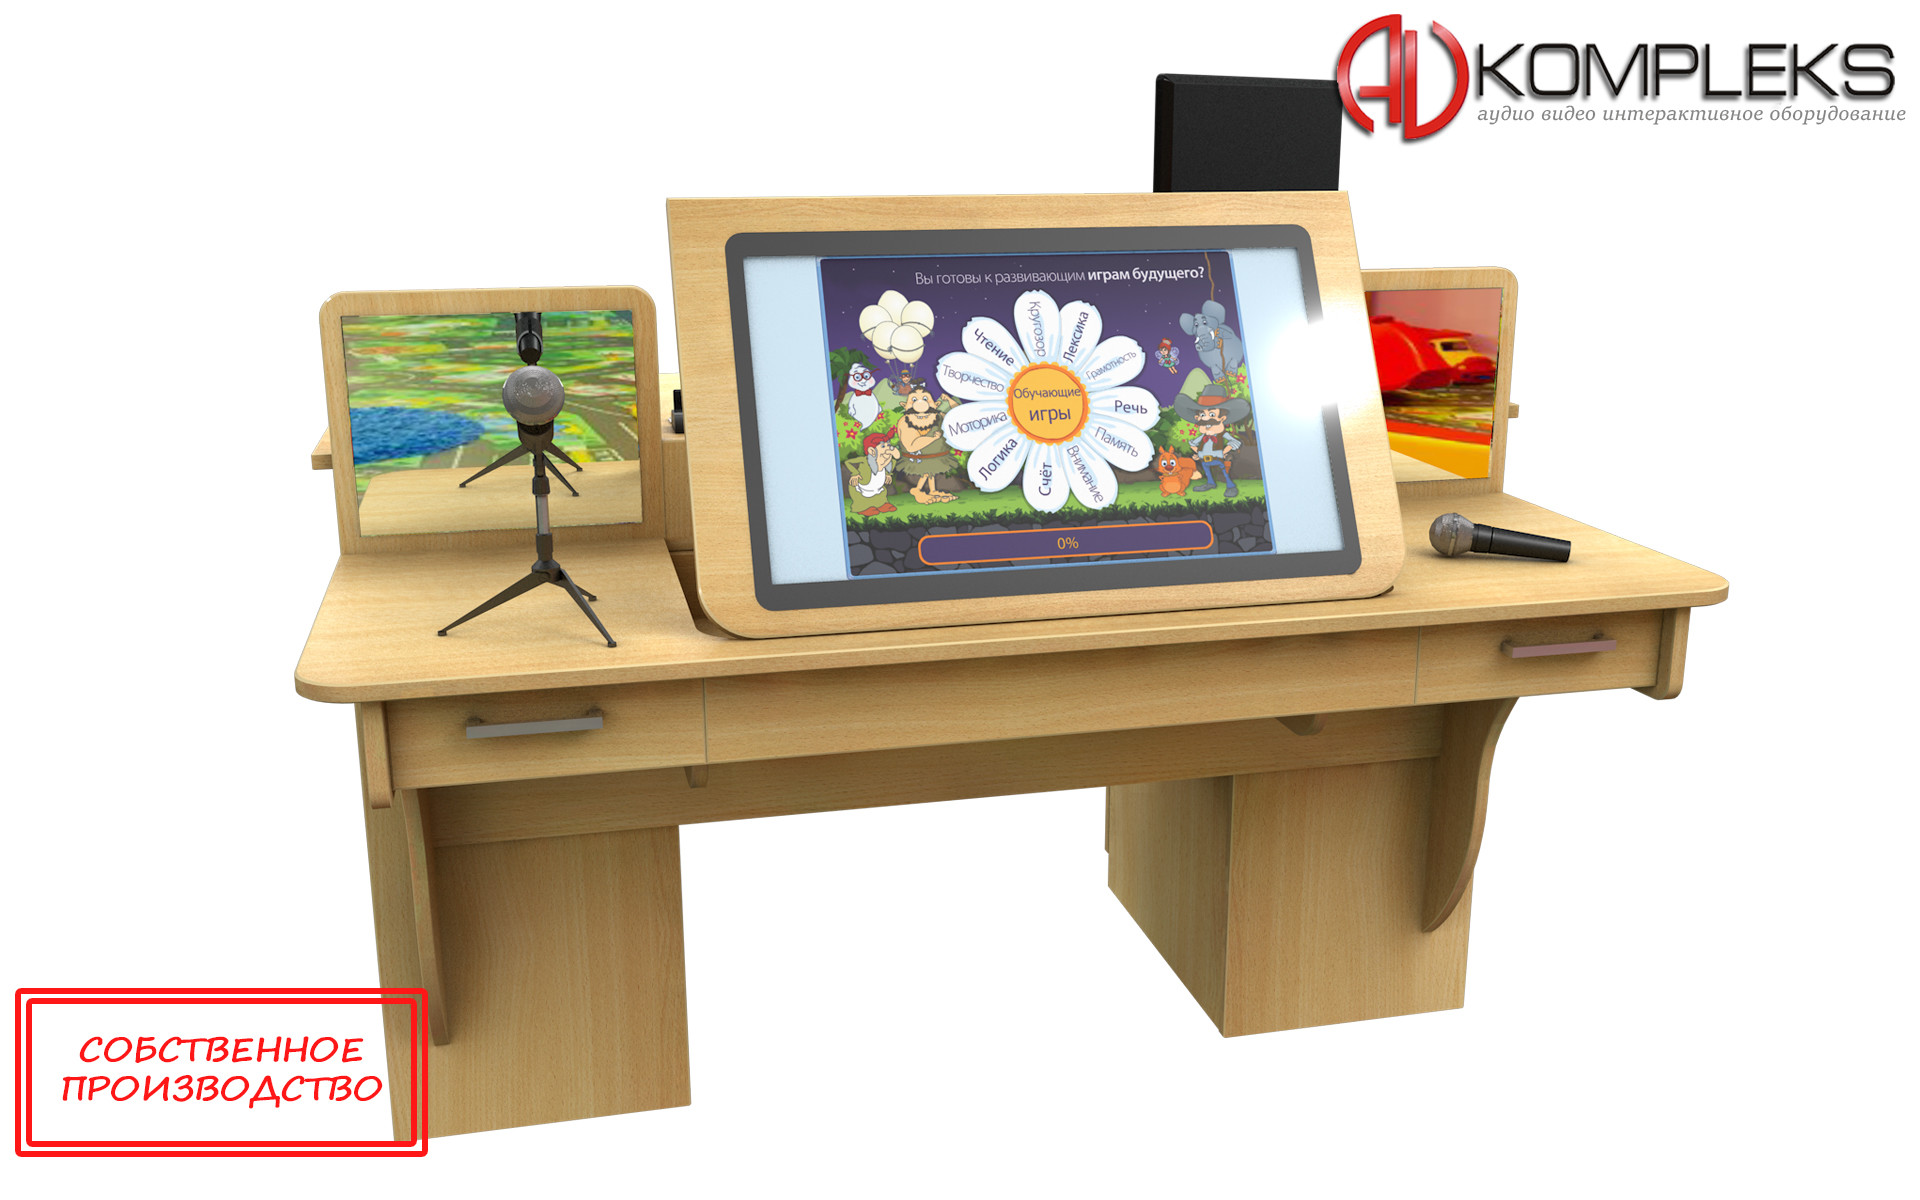 Мультимедийный образовательный интерактивный логопедический стол